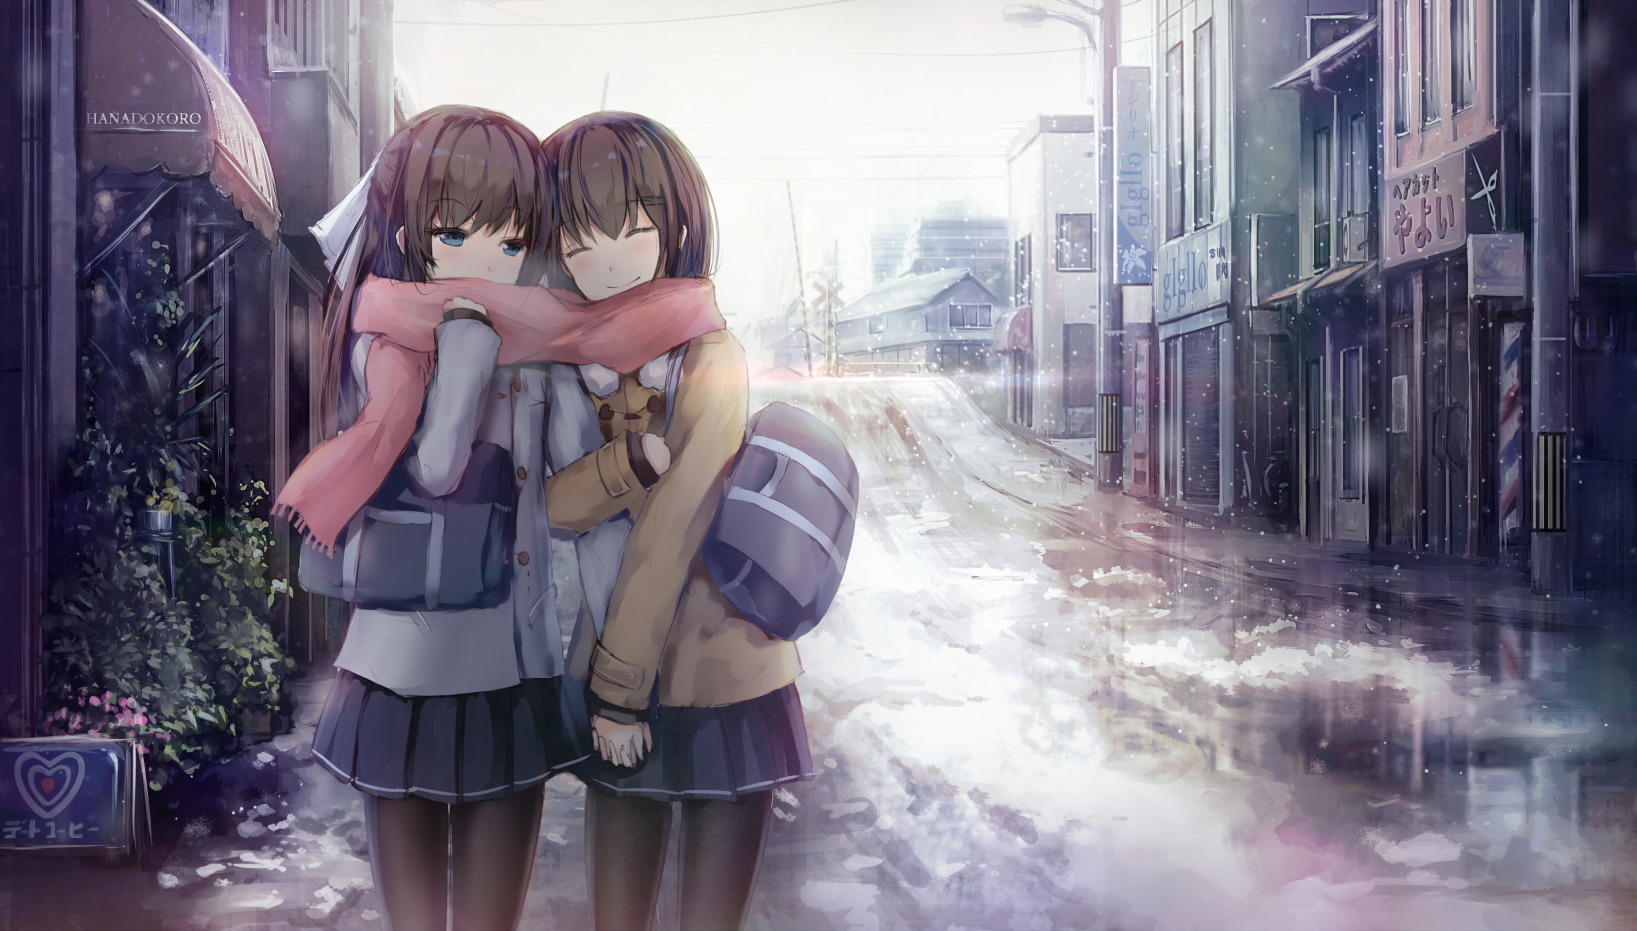 Scarf Snow Cityscape Blue Eyes Anime Schoolgirl Sisters 1637x931